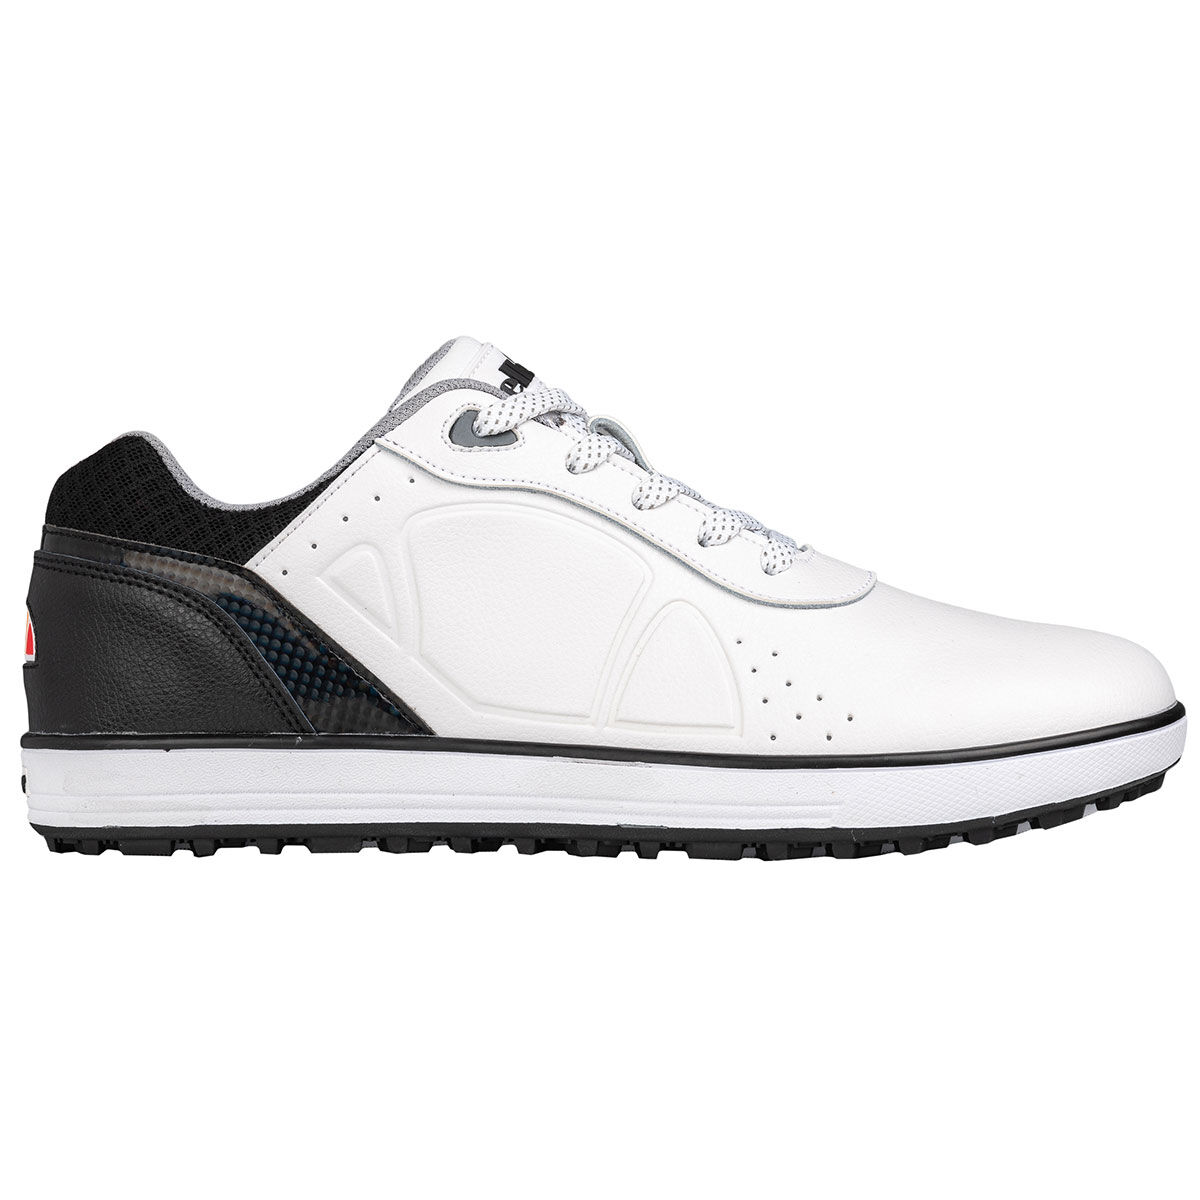 Chaussures Ellesse Shore Spikeless, homme, 7, Blanc/Noir | Online Golf